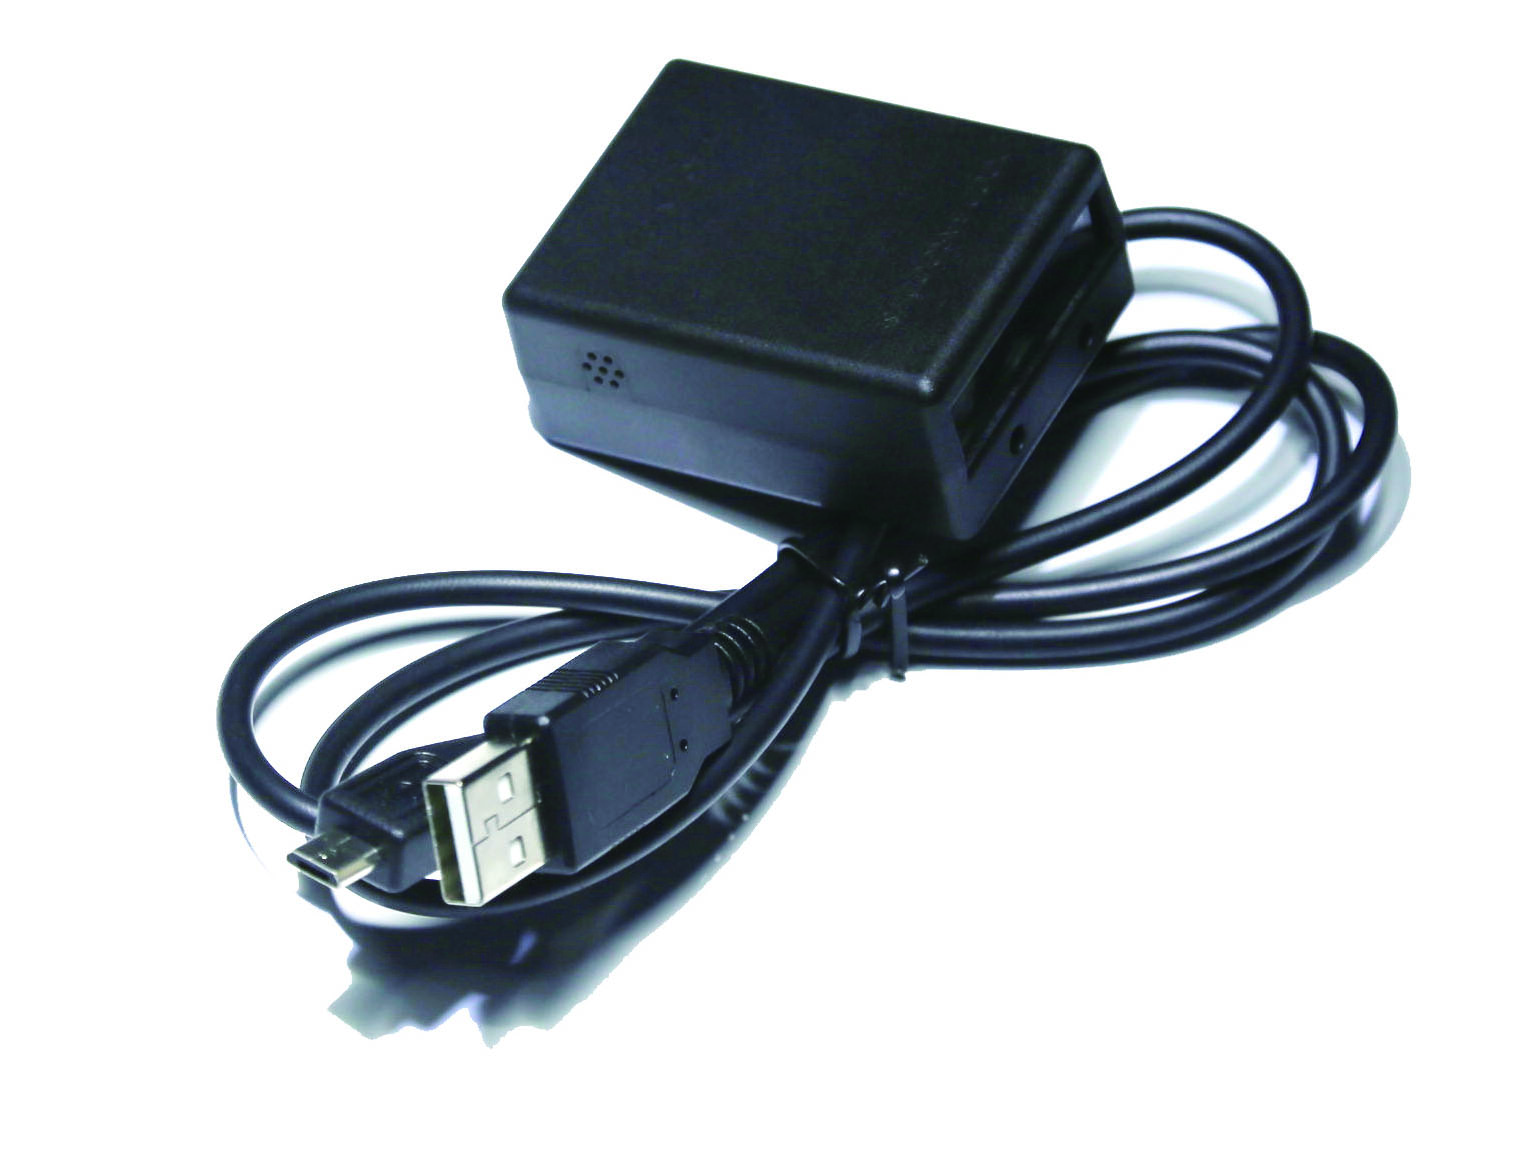 حجم صغير USB سلكية moudle اتفاقية مكافحة التصحر الباركود